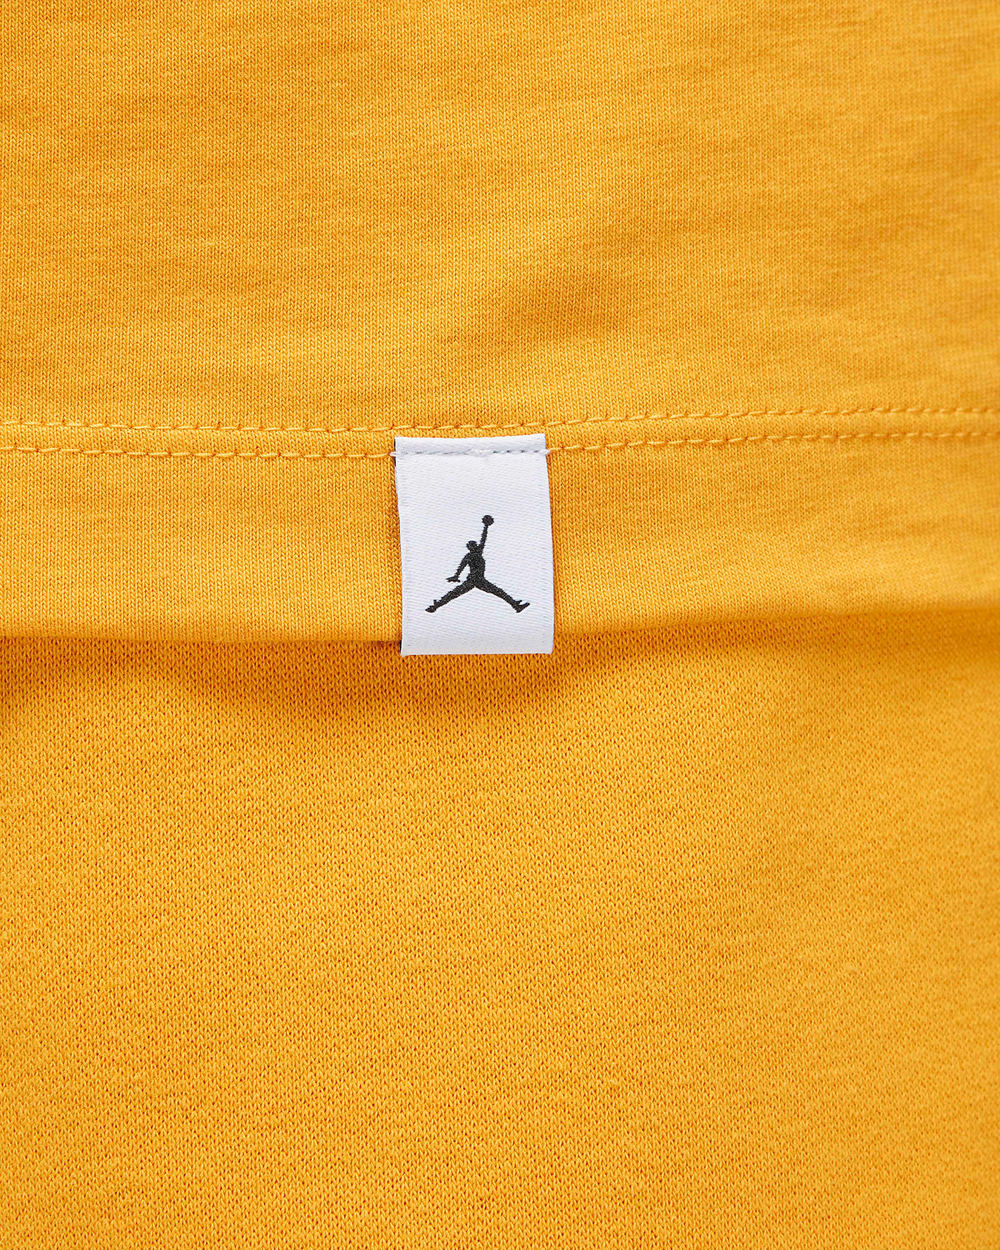 Air-Jordan-6-Yellow-Ochre-Matching-Shirt-4